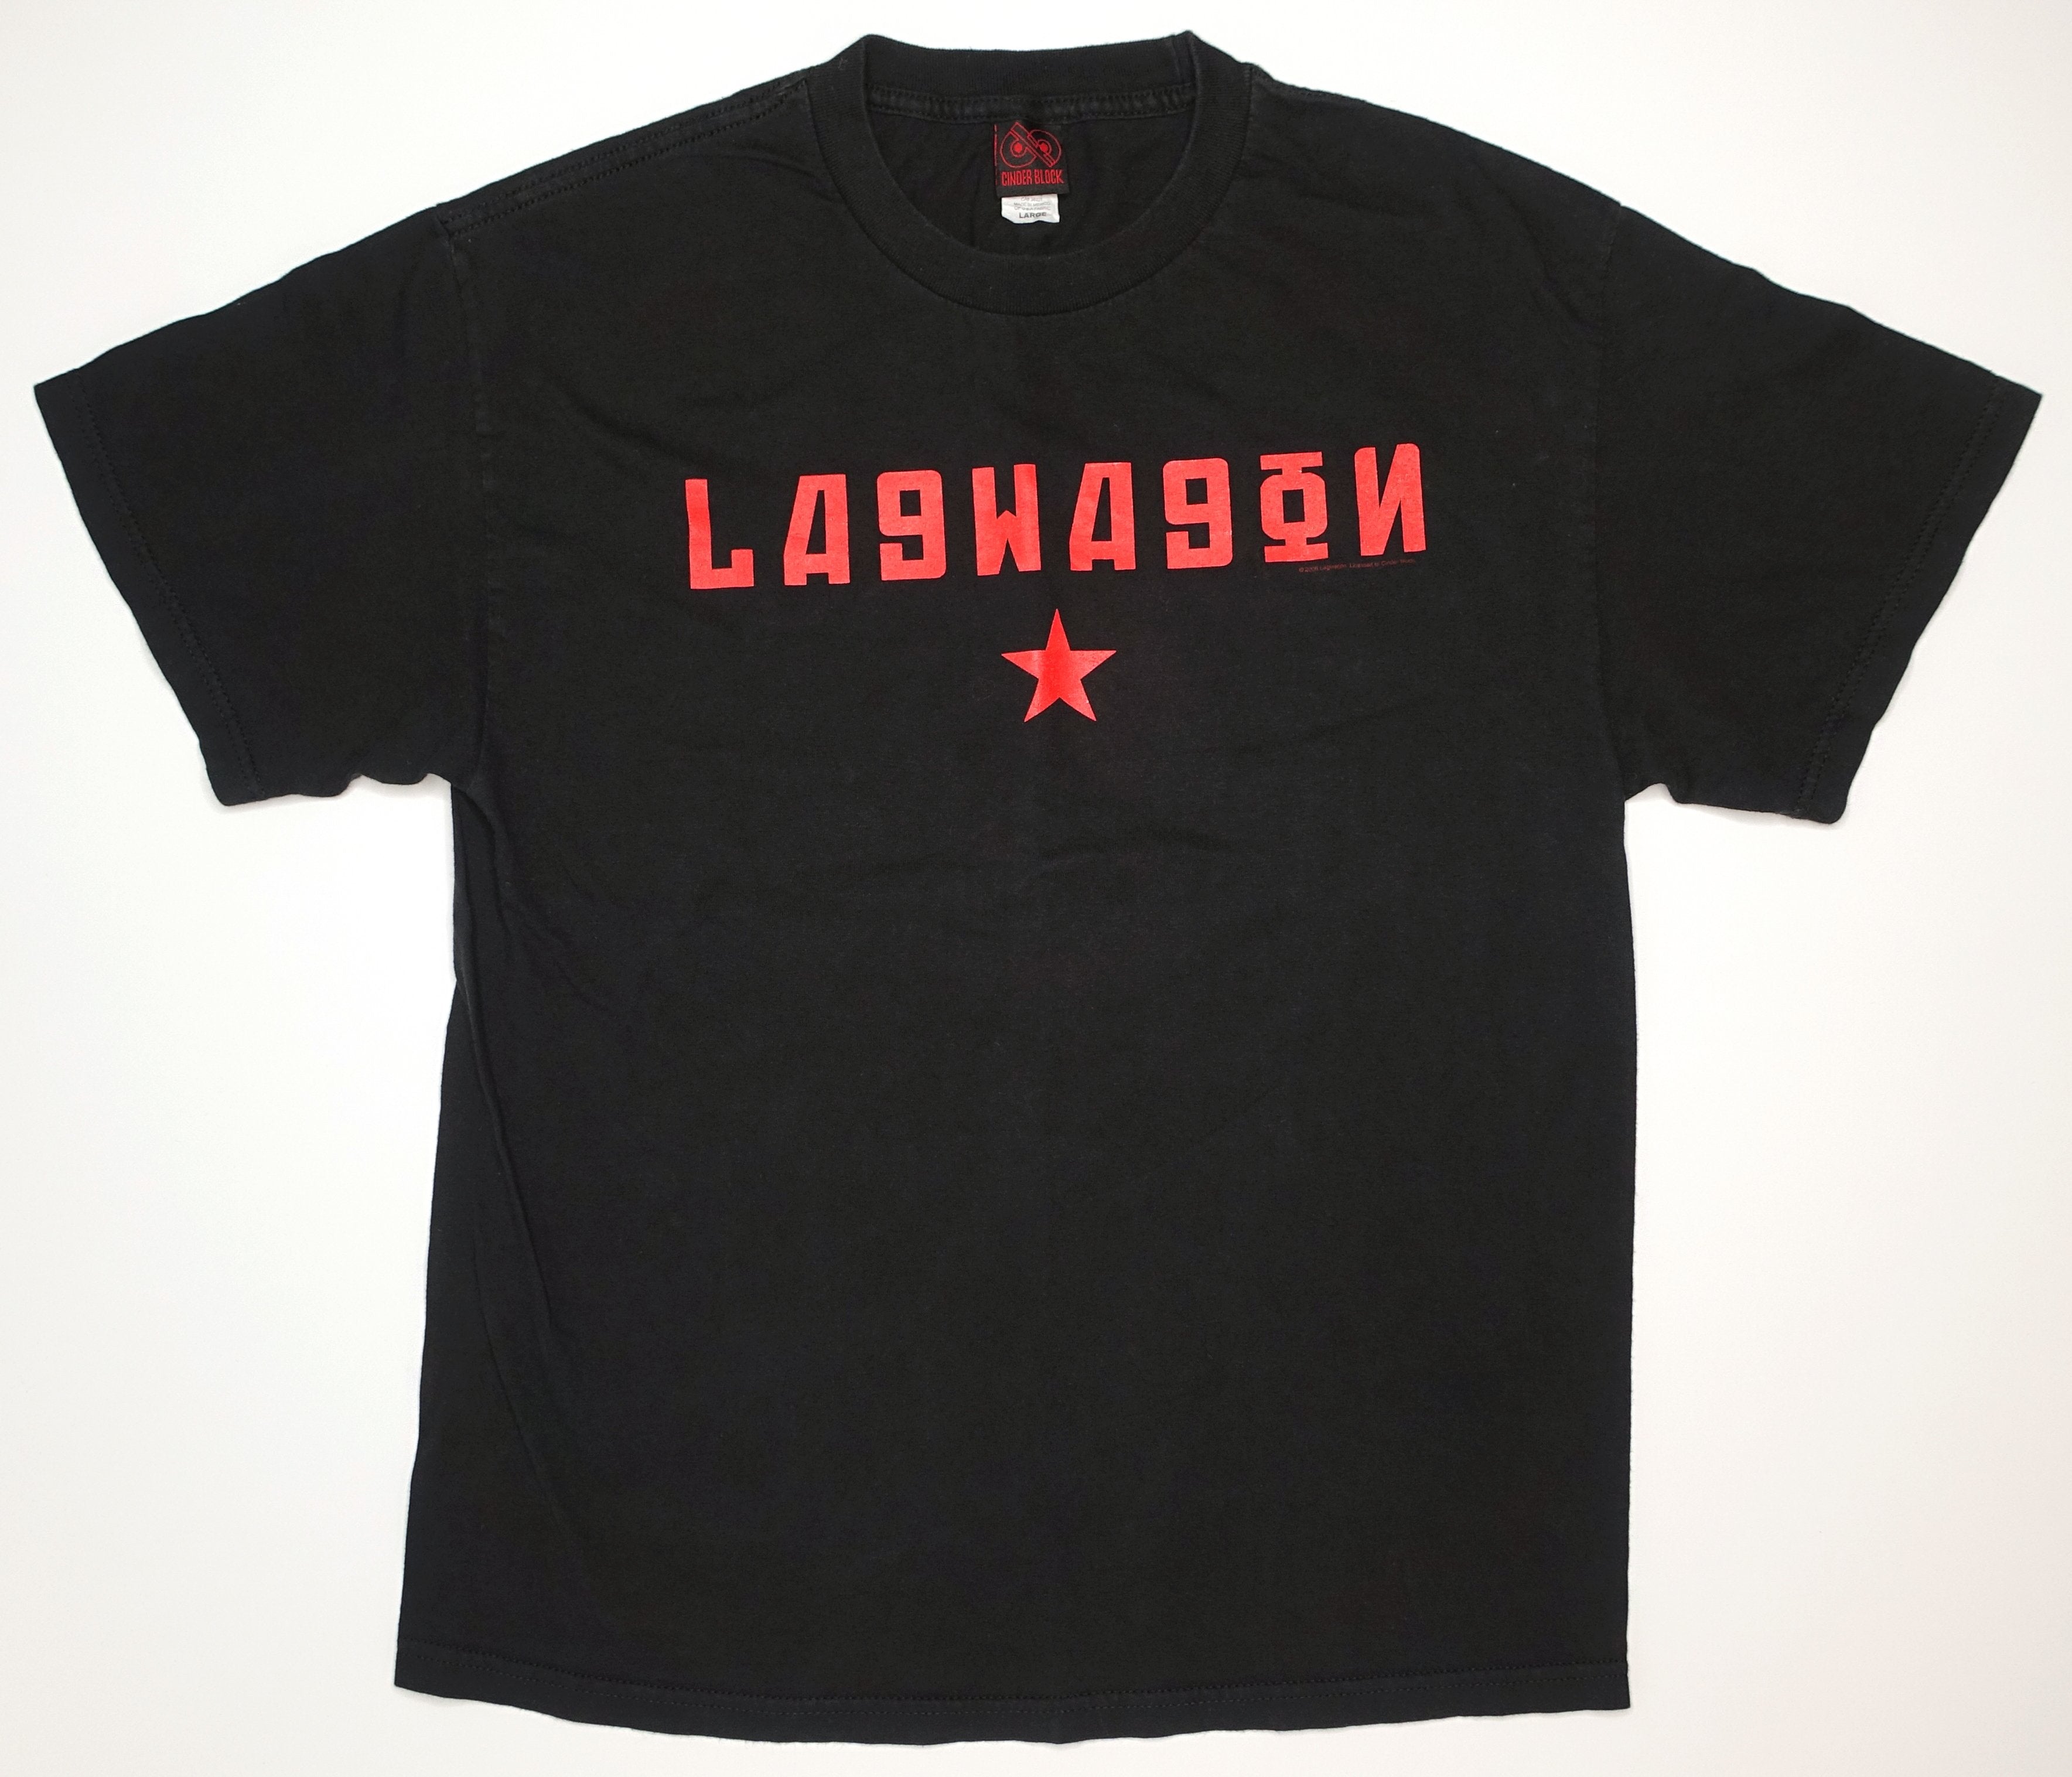 Lagwagon - Communist Party 2006 Tour Shirt Size Large